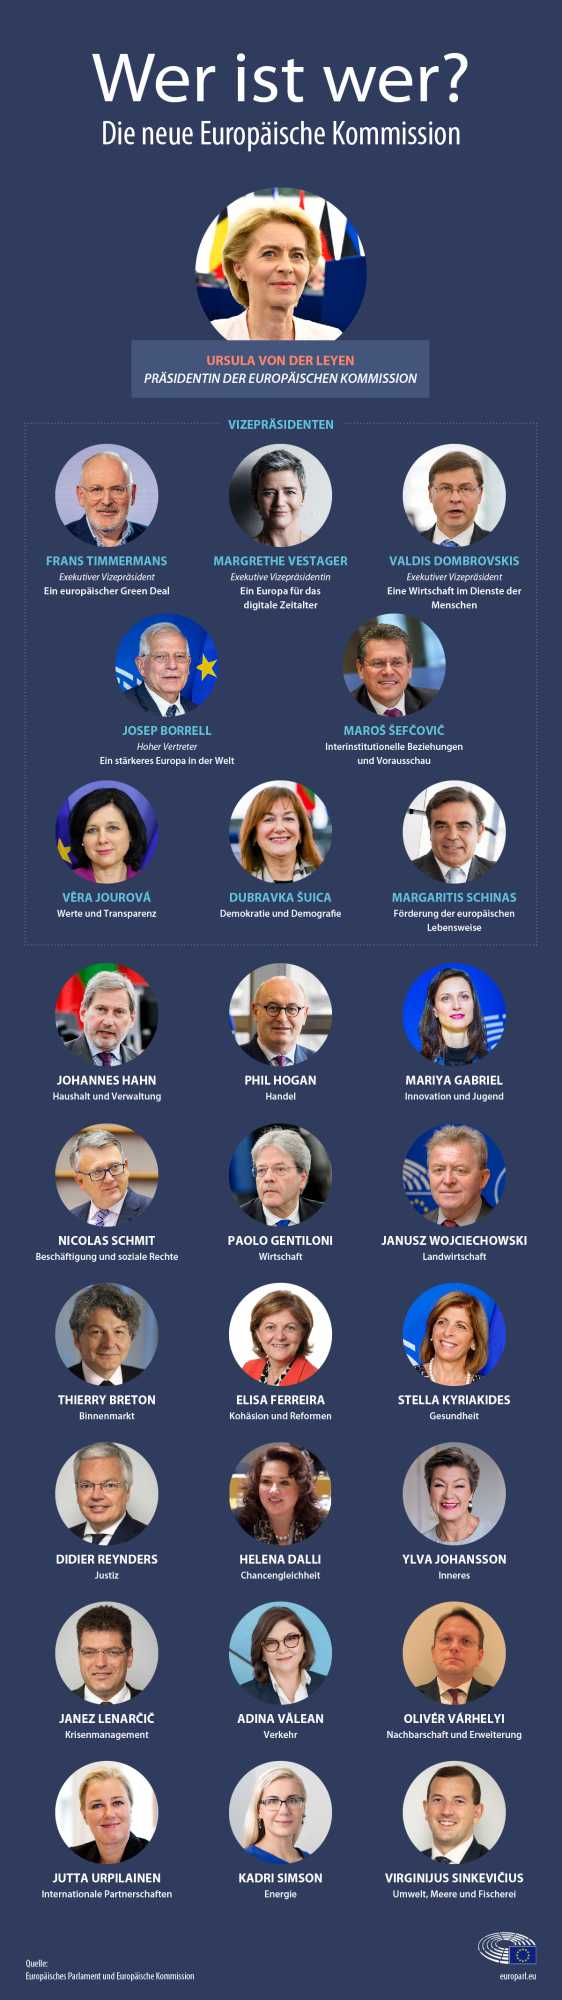 Wer ist wer in der neuen EU-Kommission?